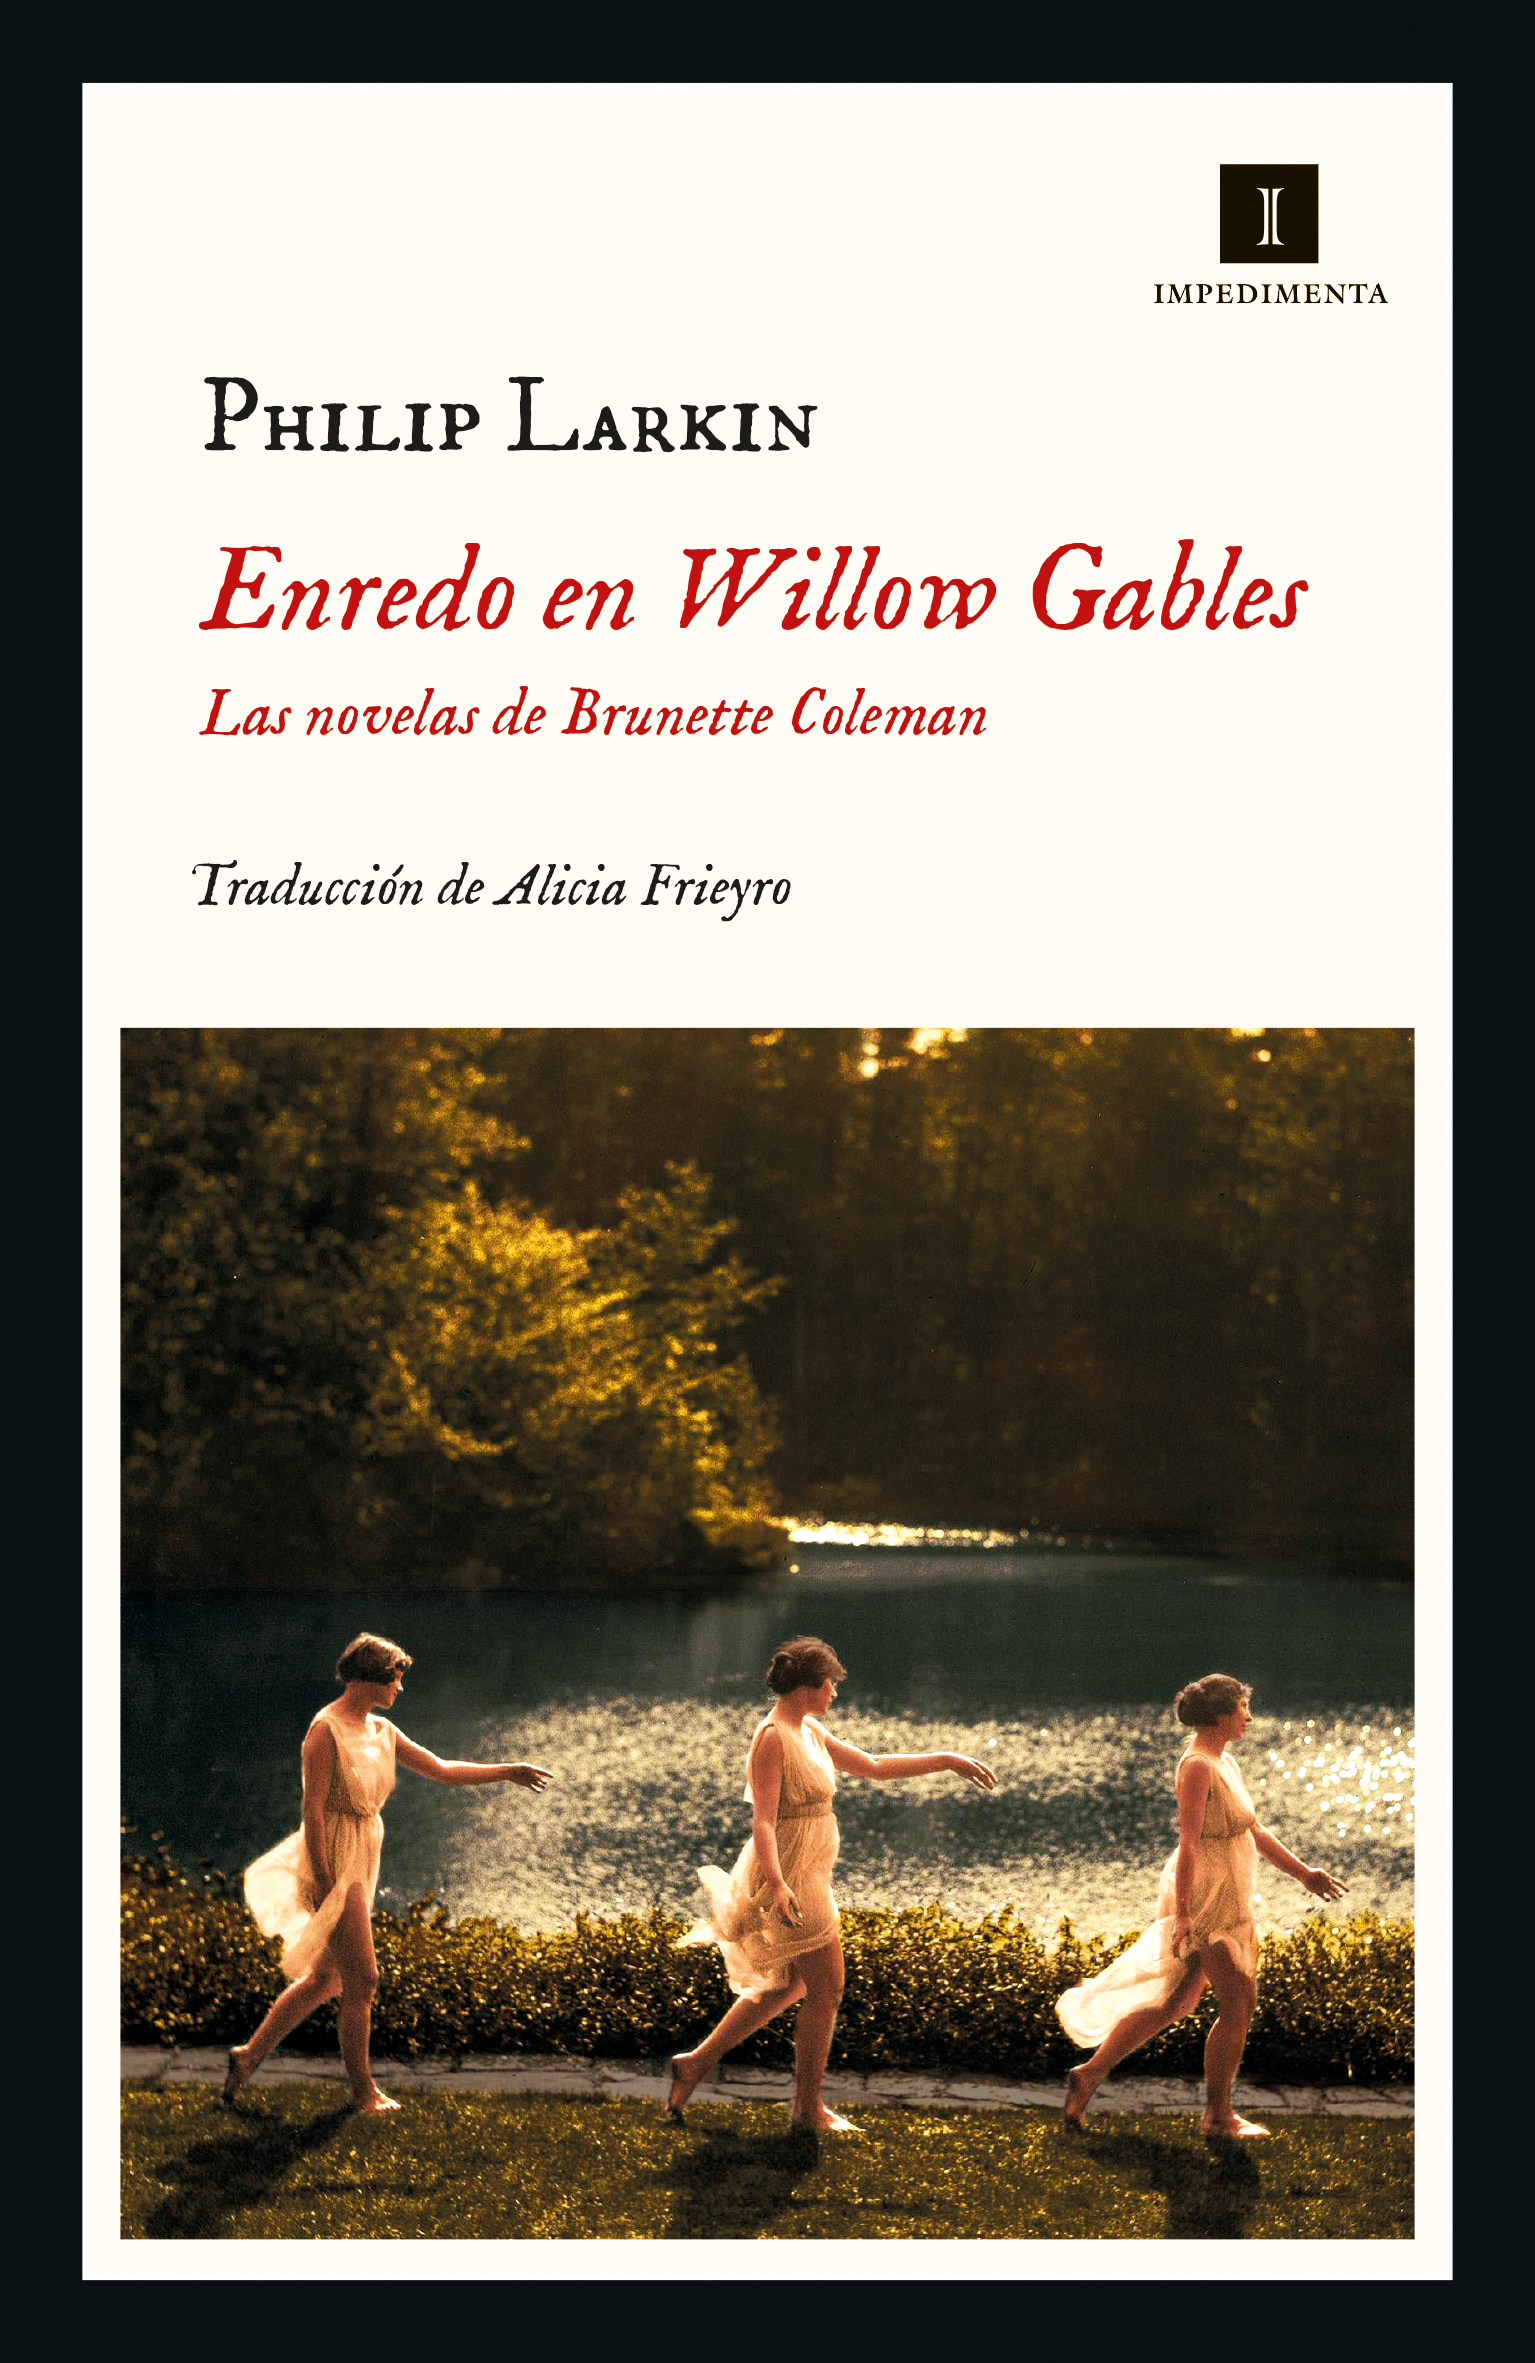 Zenda recomienda: Enredo en Willow Gables, de Philip Larkin